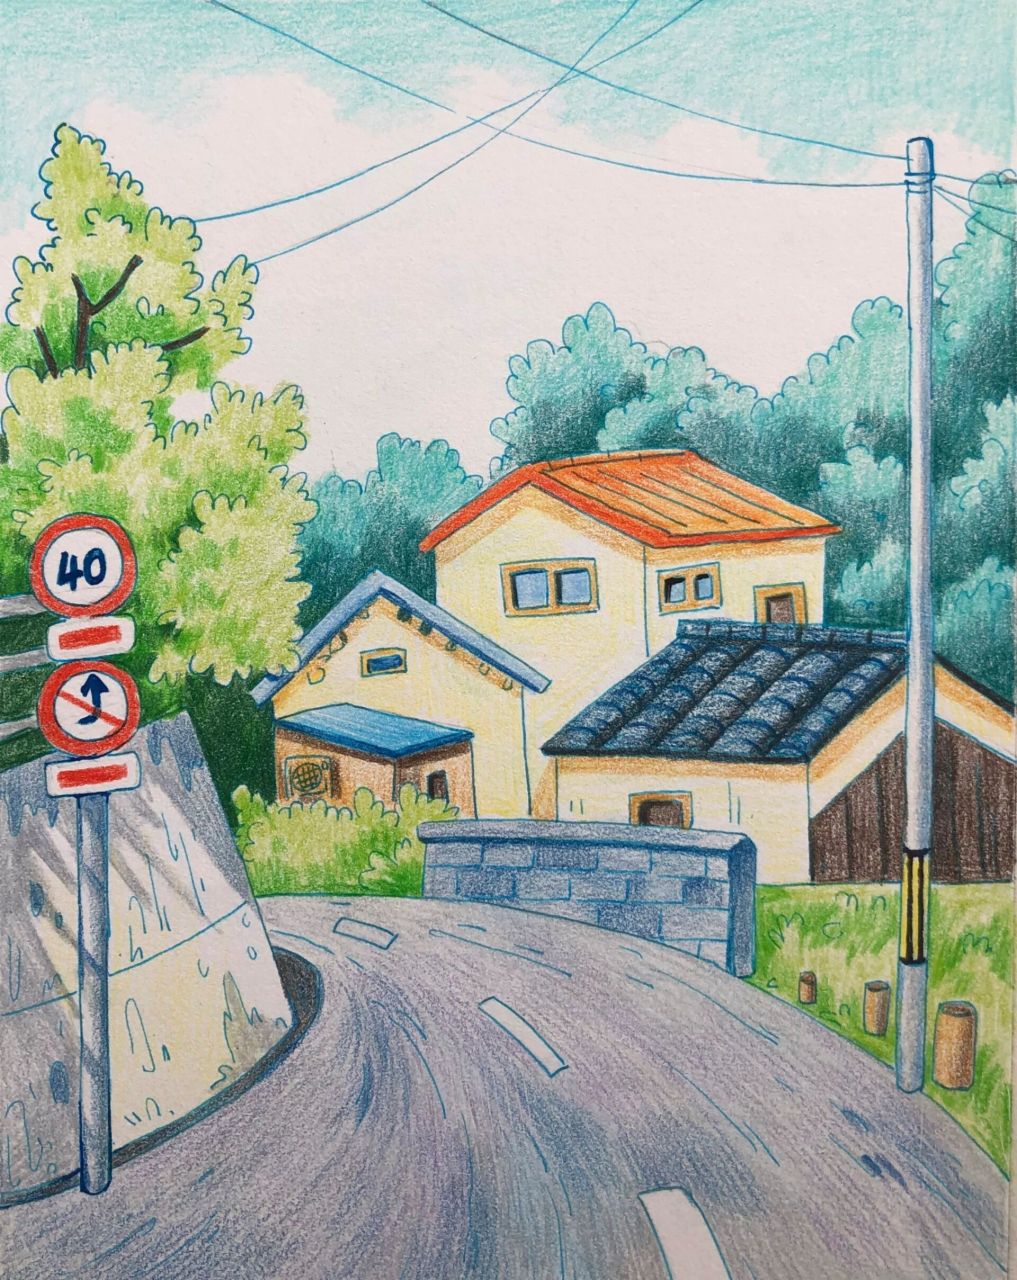 彩铅风景手绘《美丽的村庄》过程图 临万小悠 16开素描纸 本范油性